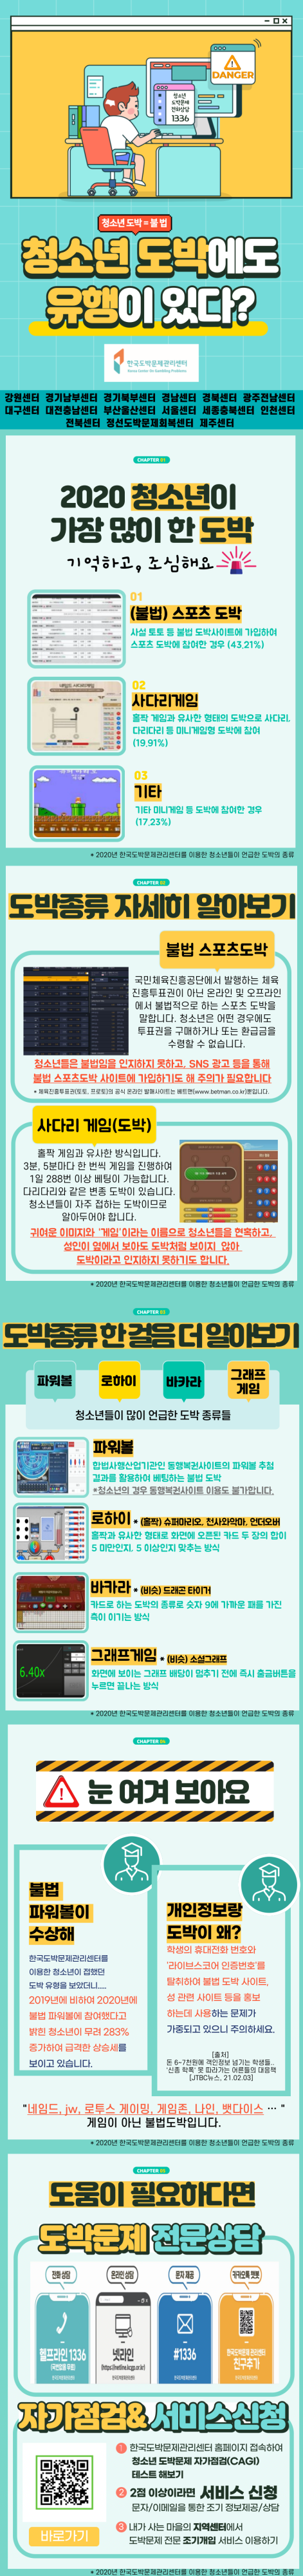 충청북도교육청 학교자치과_카드뉴스(2월)_도박유형